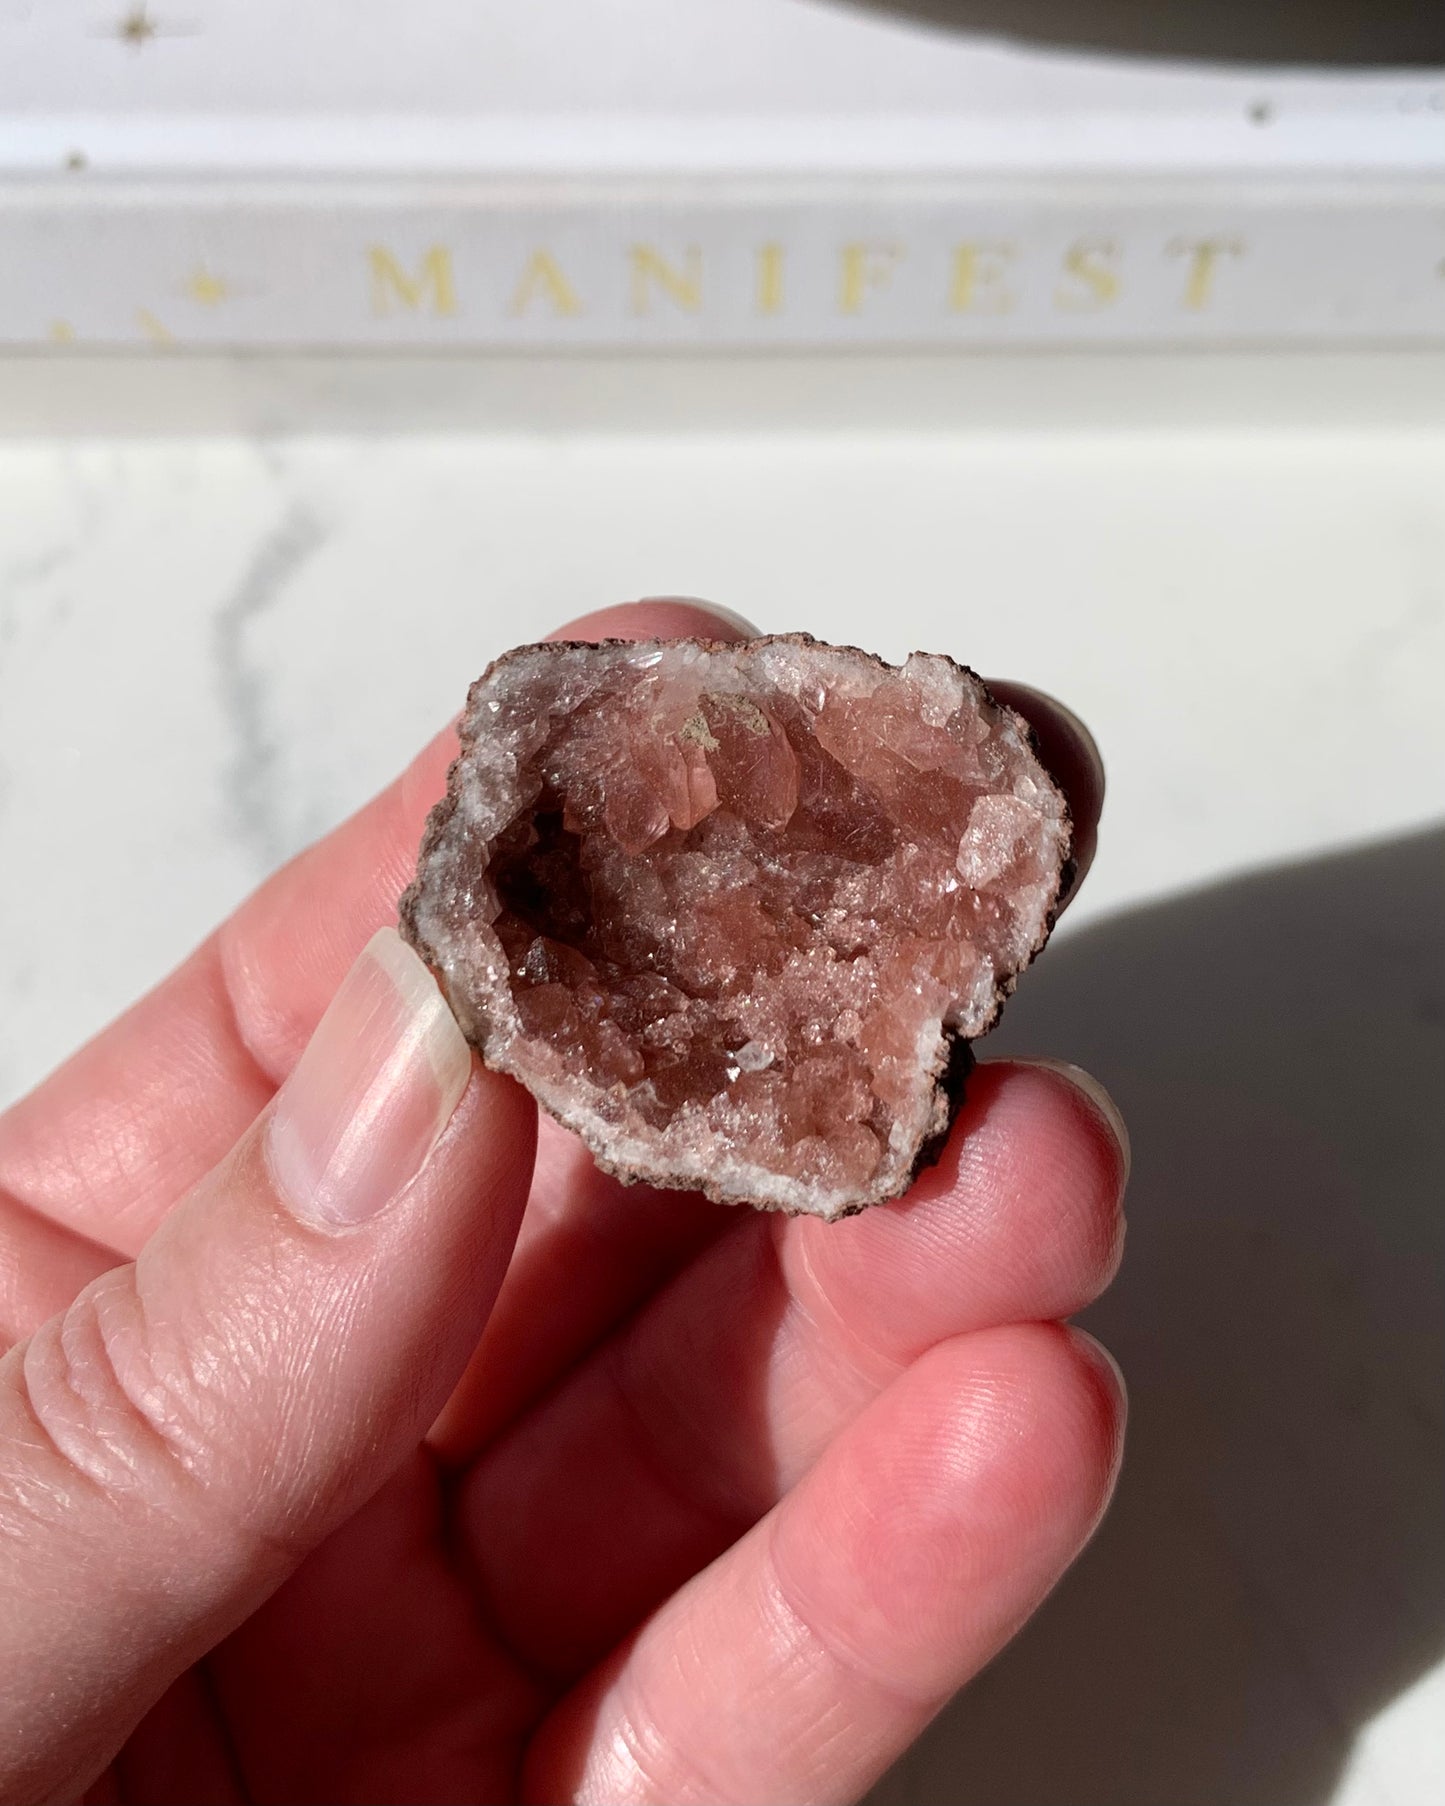 Pink Amethyst Geode | 11g